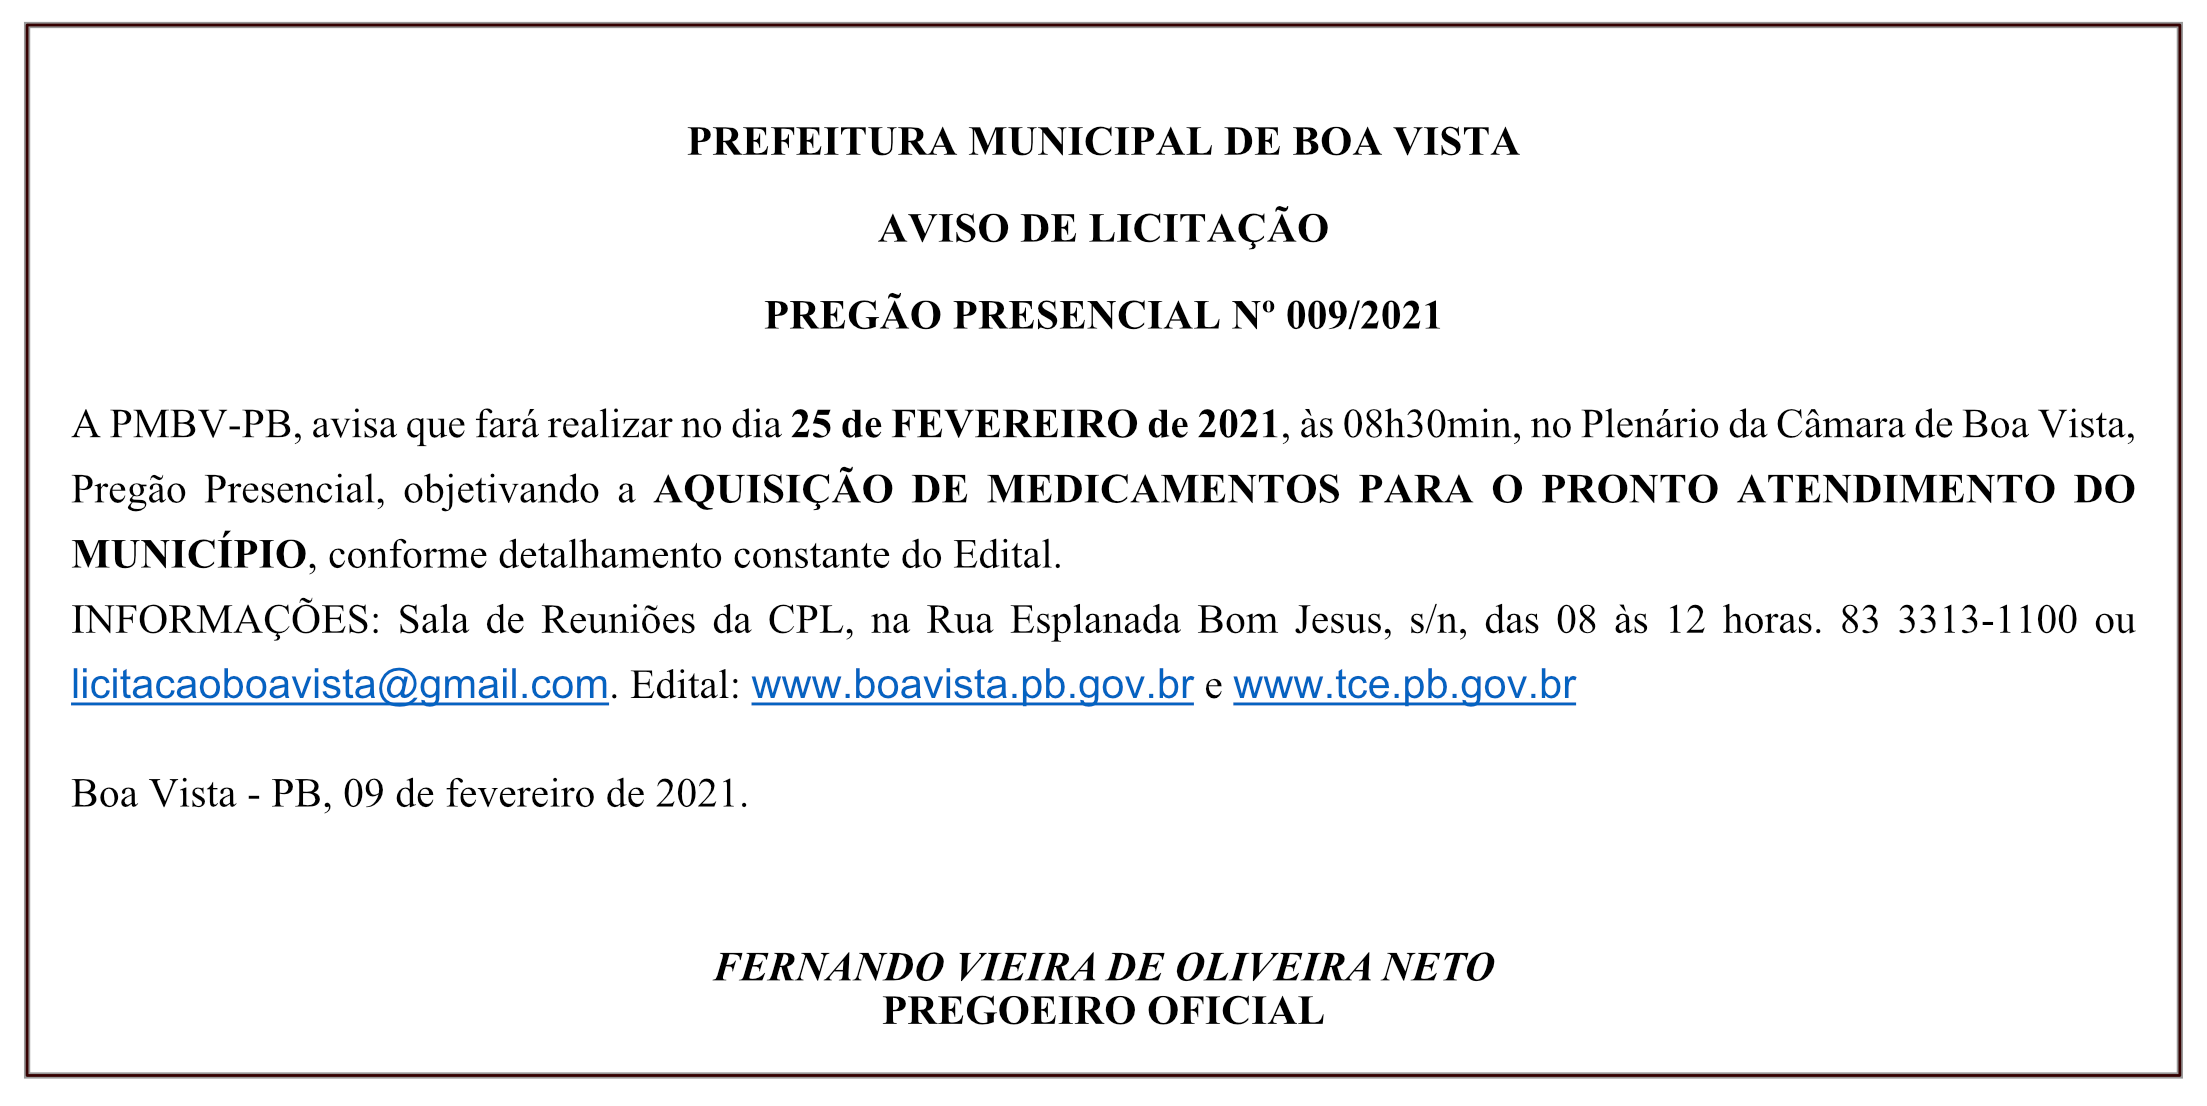 PREFEITURA MUNICIPAL DE BOA VISTA – AVISO DE LICITAÇÃO – PREGÃO PRESENCIAL Nº 009/2021